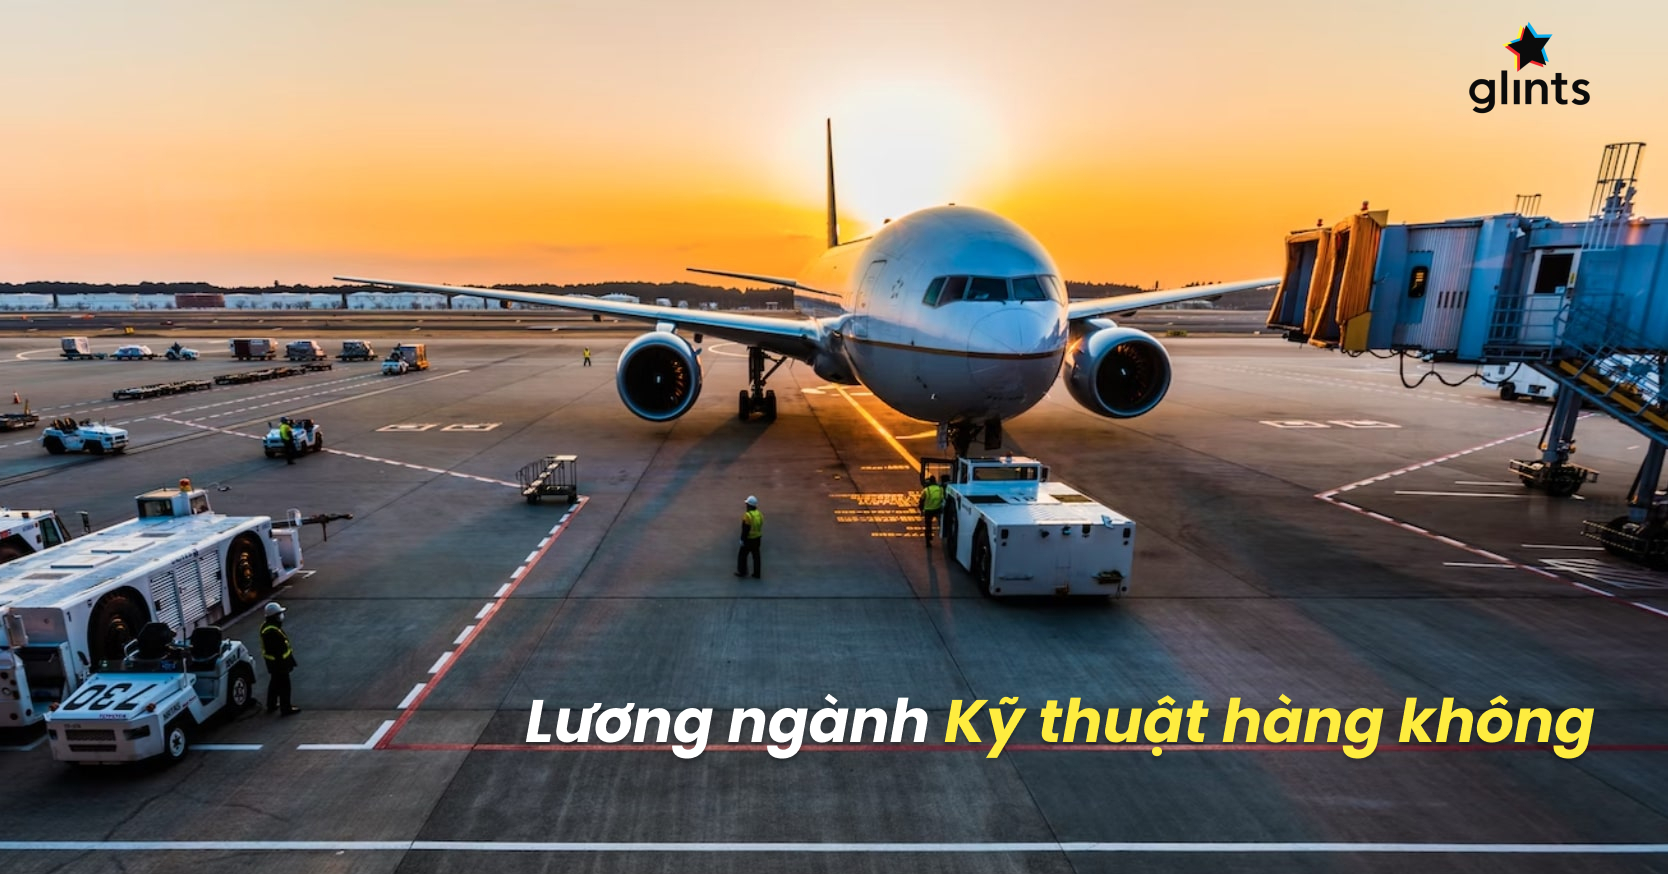 Kỹ thuật hàng không là ngành nghề đầy thử thách và hứa hẹn những cơ hội nghề nghiệp bổ ích. Nếu bạn muốn biết về lương ngành kỹ thuật hàng không tại Việt Nam, hãy xem hình ảnh liên quan để khám phá sự nghiệp đầy tiềm năng này.